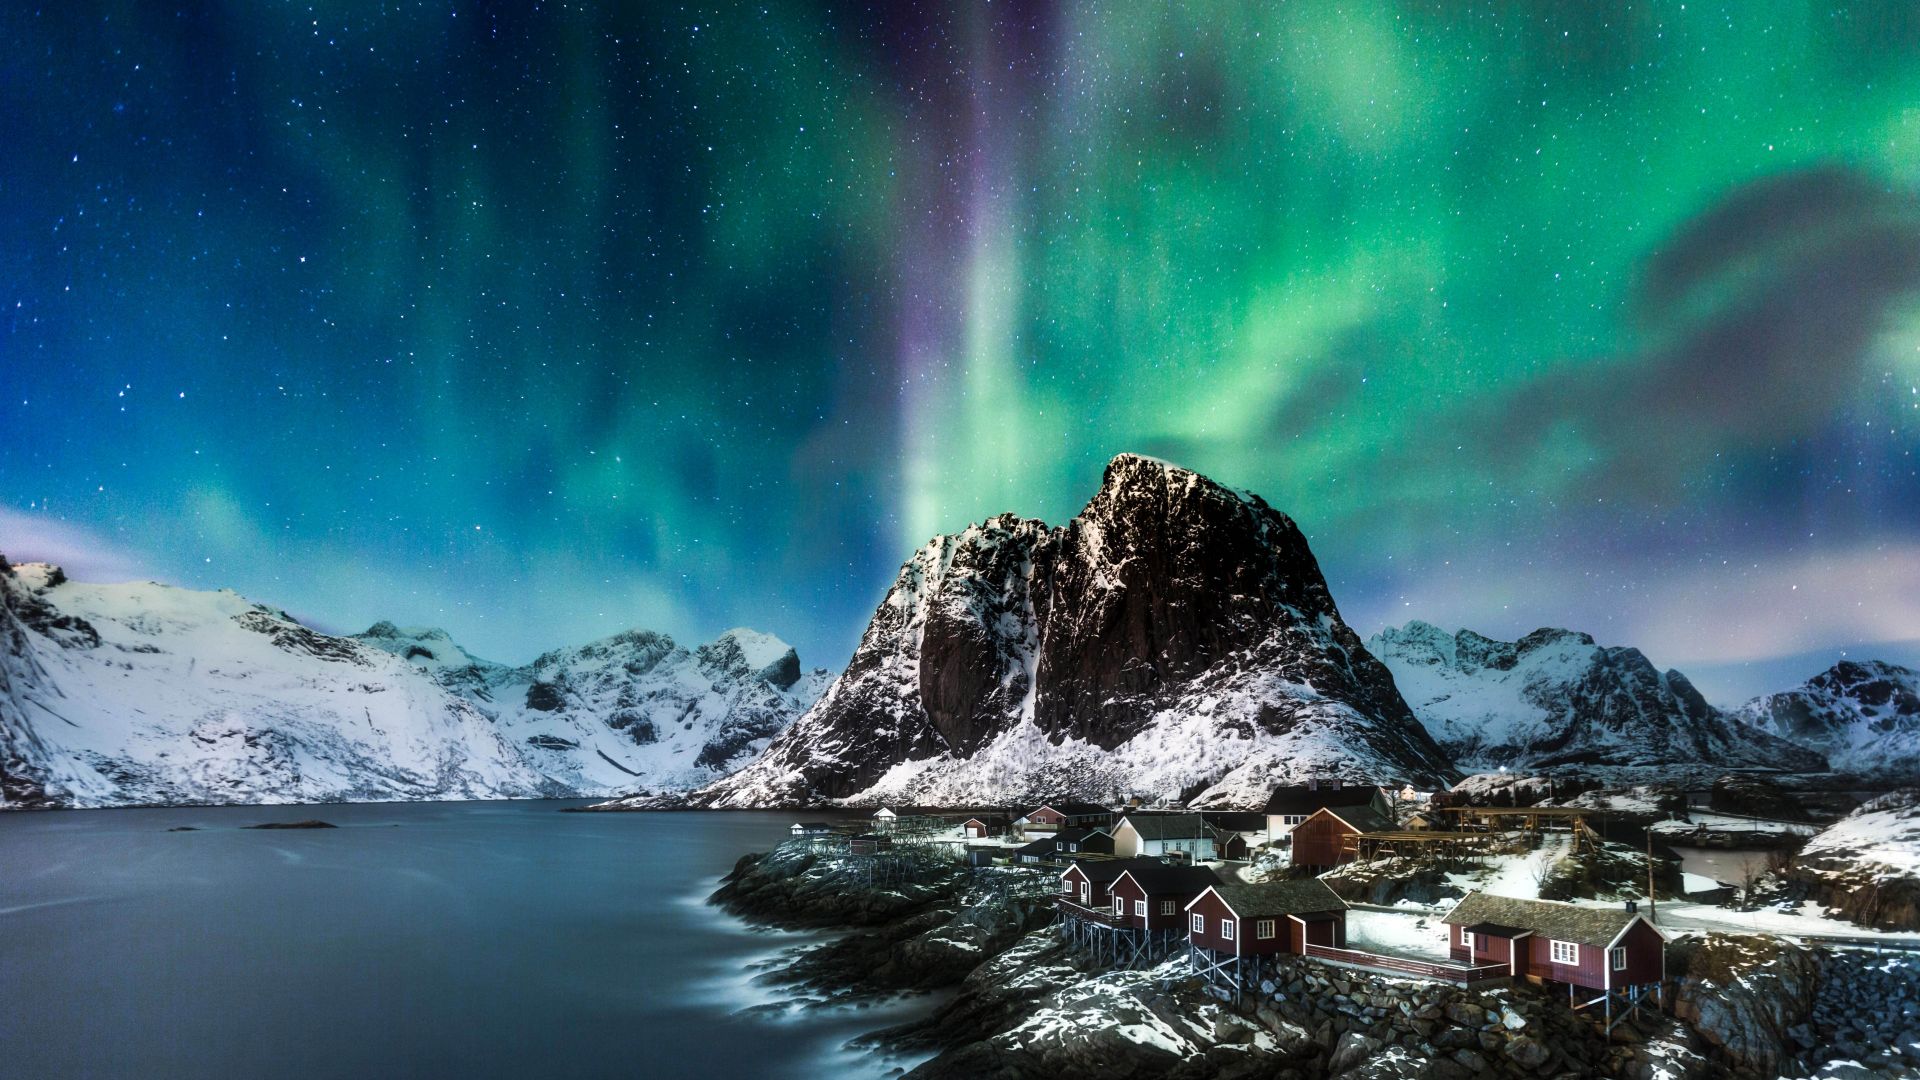 Norway, Lofoten islands, Europe, Mountains, sea, night, northern lights, 5k (horizontal)